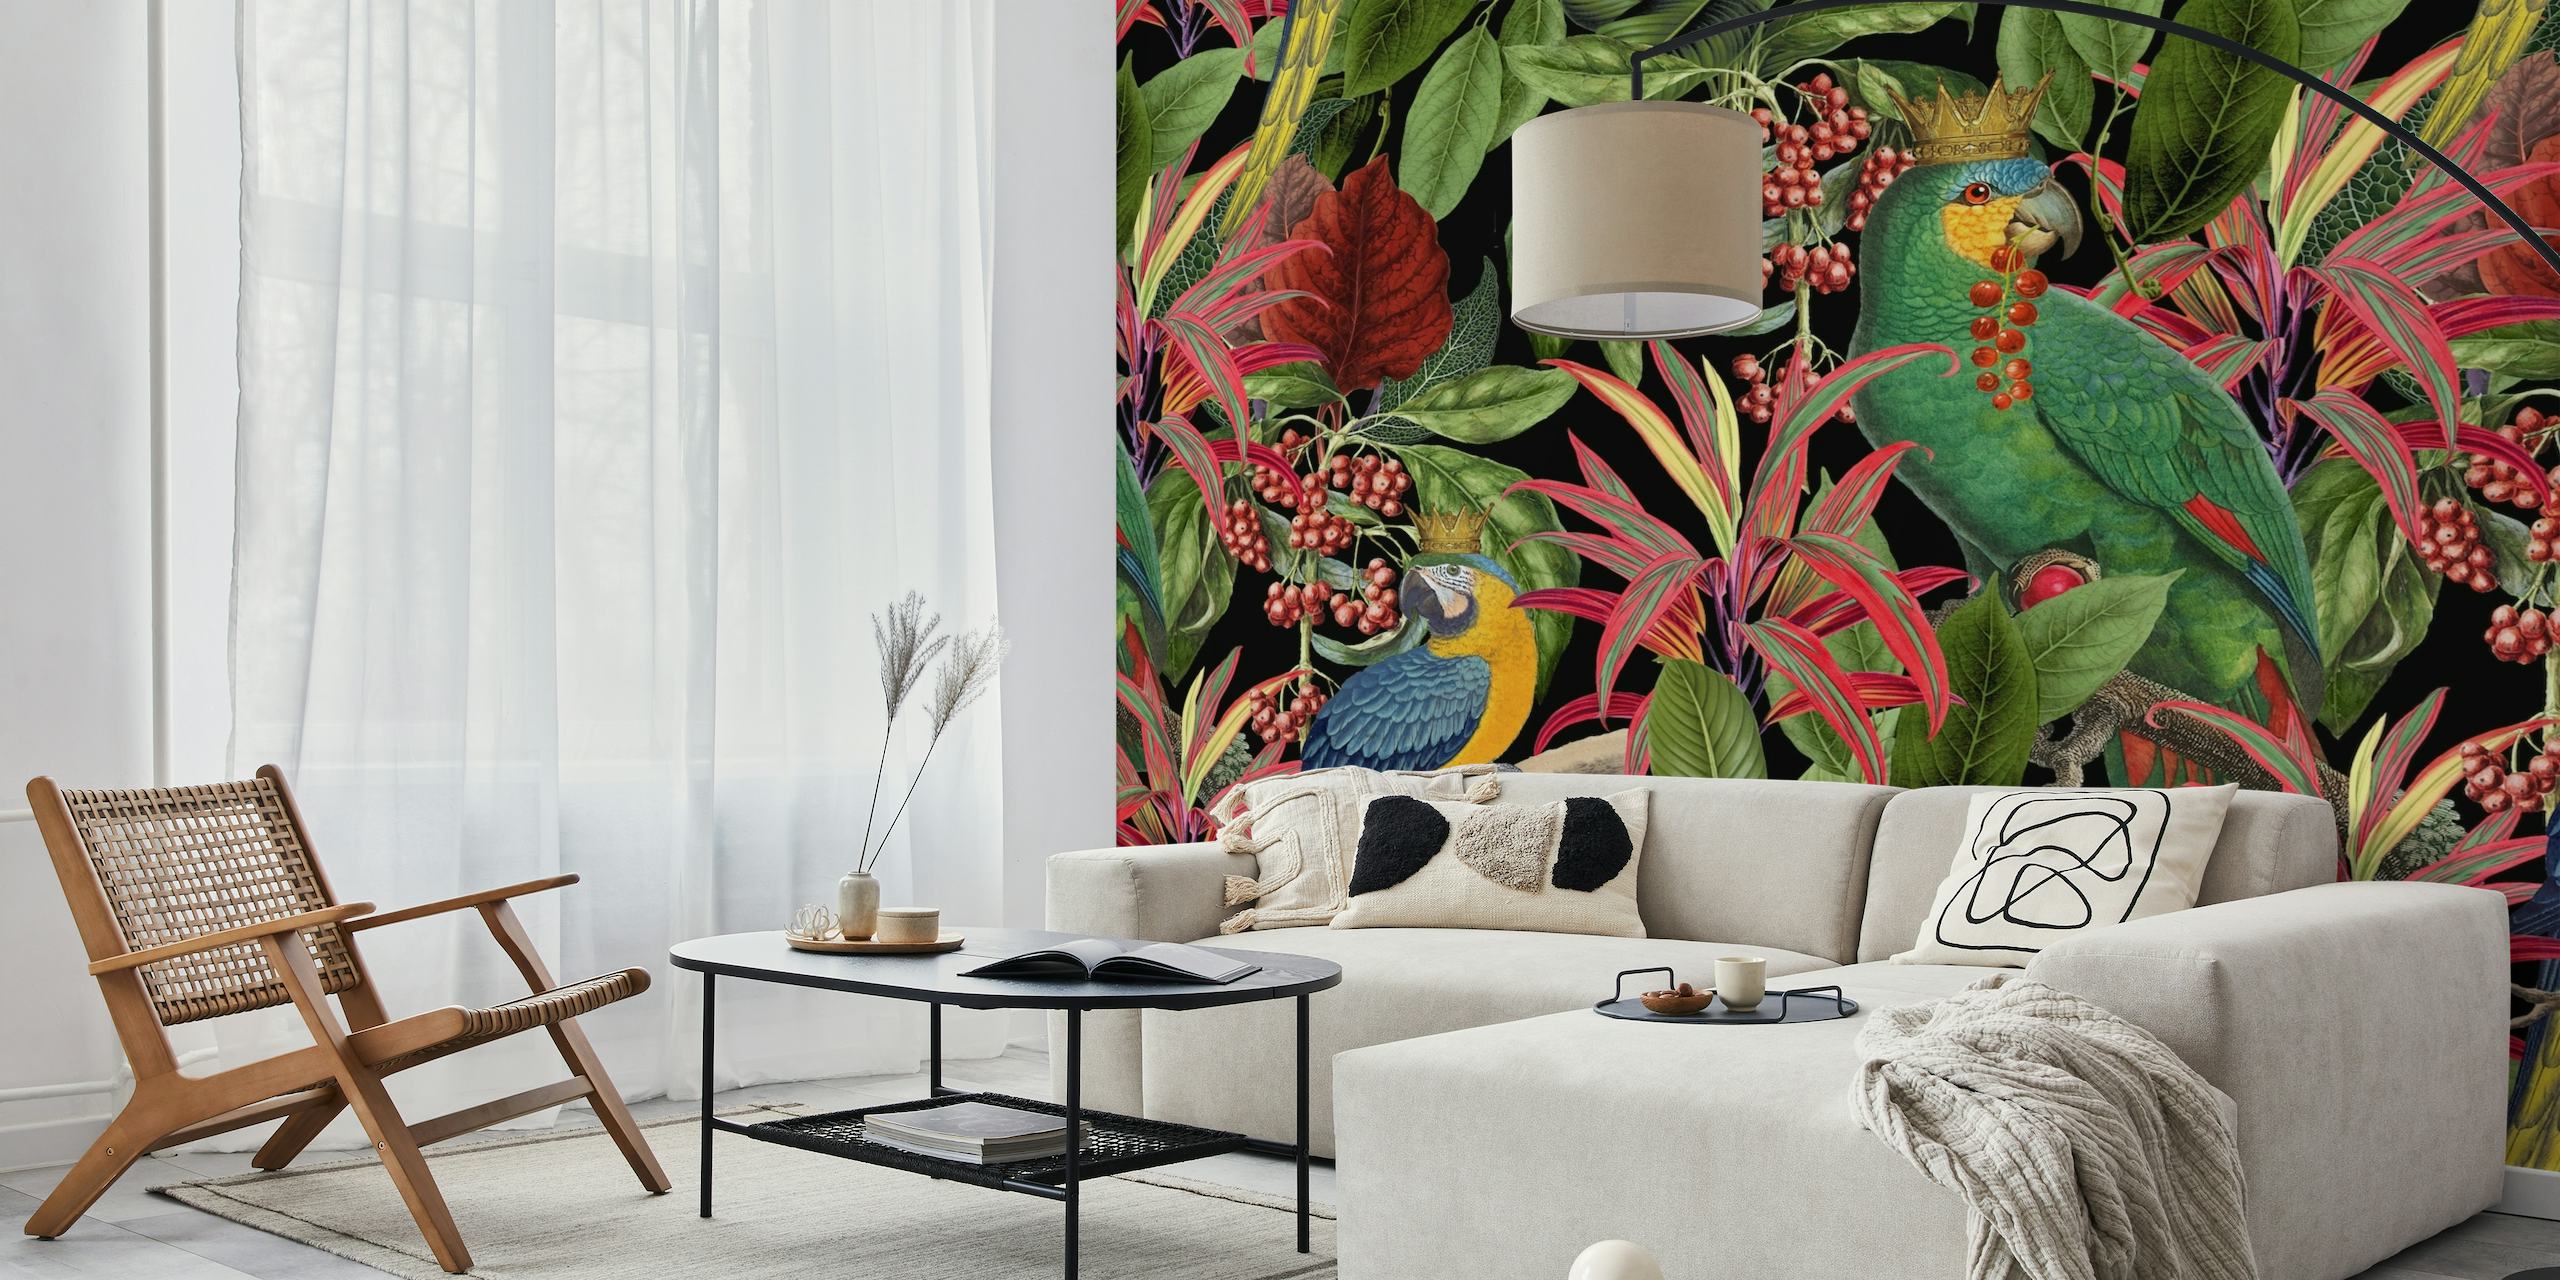 Farbenfrohes Wandbild mit Papageienmotiv in einer tropischen Laubumgebung